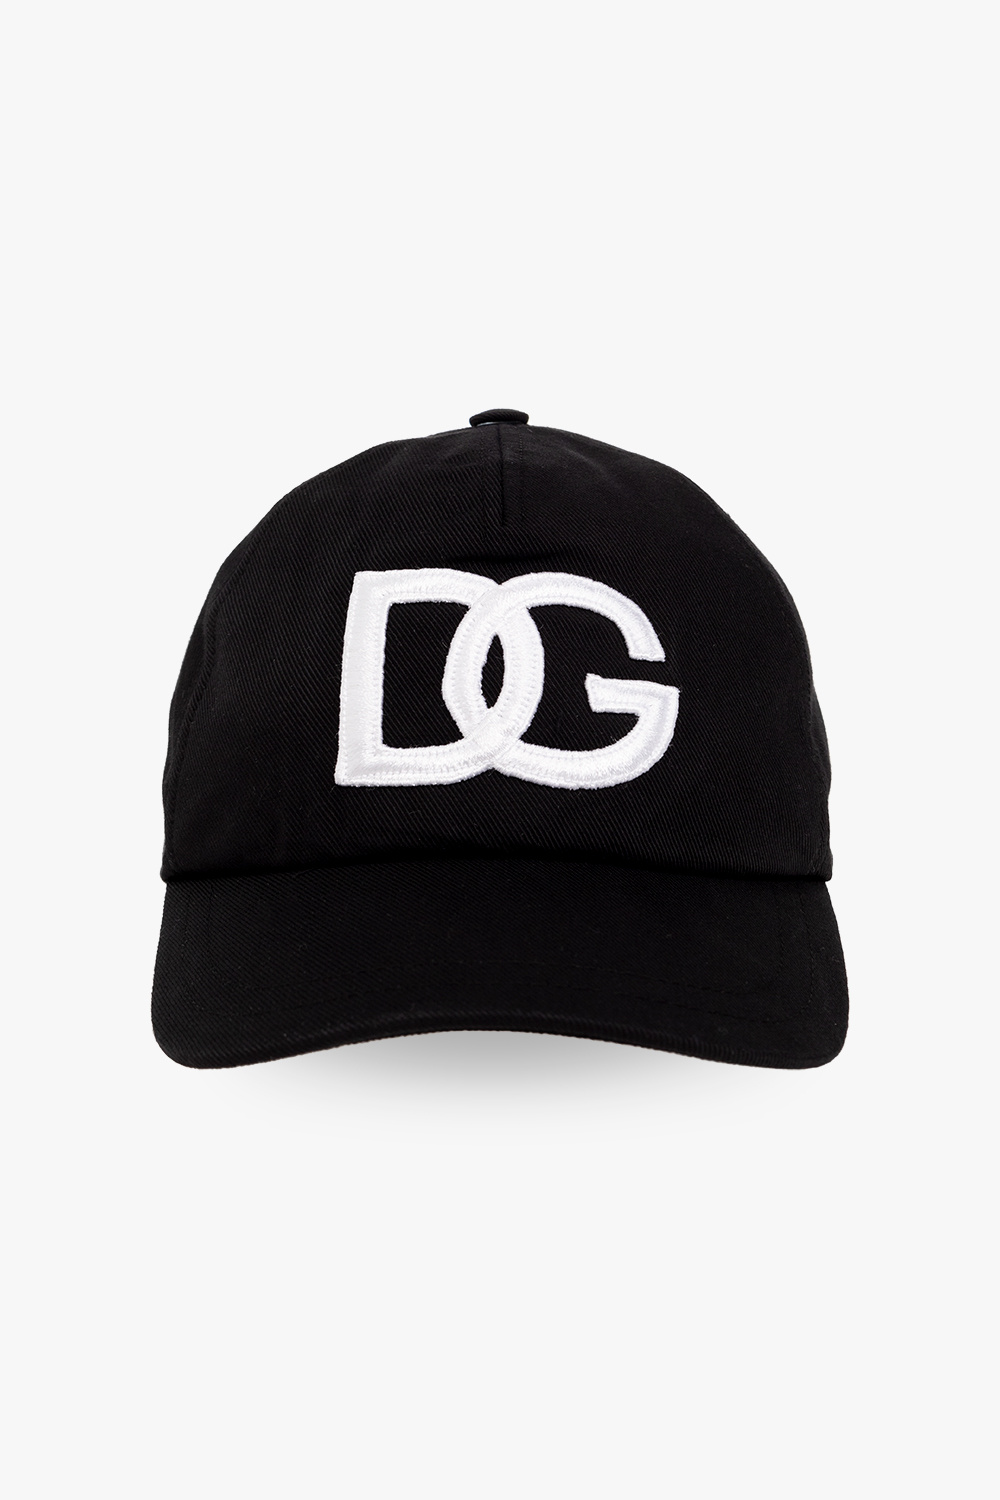 fabrycznie nowa z metkami Dolce & Gabbana bardzo ekskluzywna koszula Baseball cap